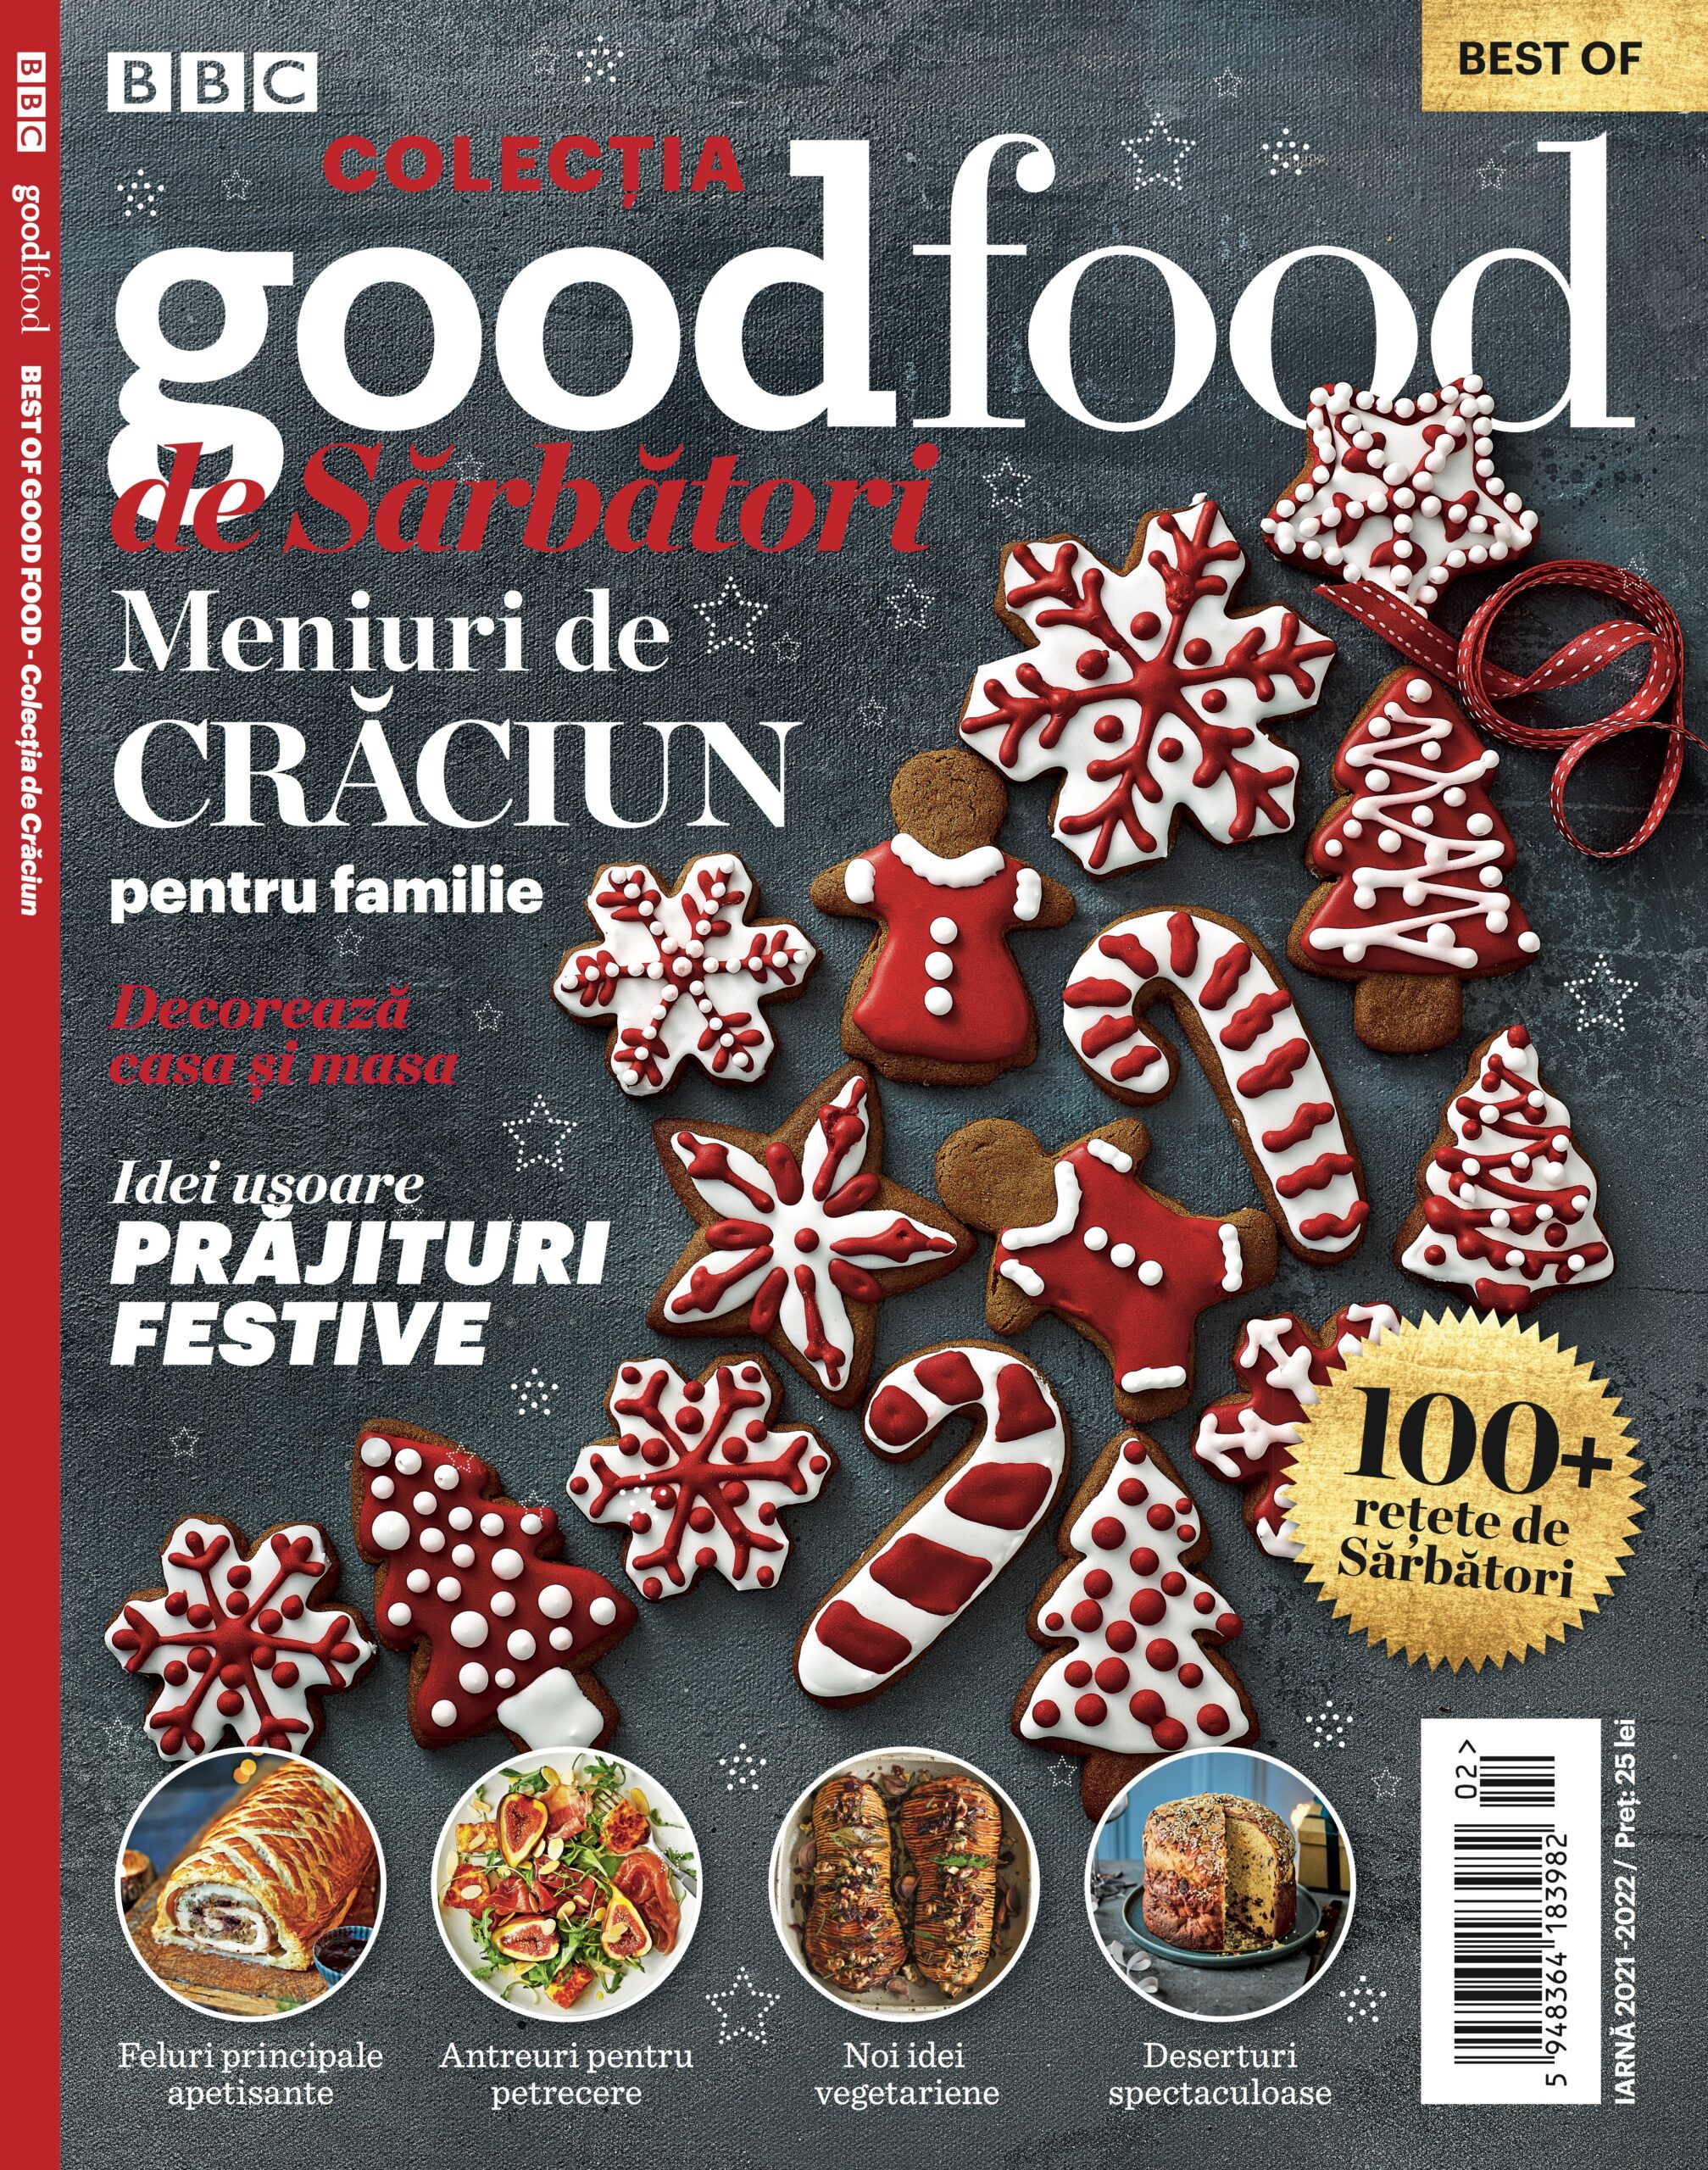 BBC Good Food Magazine Romania ~~ Colectia de Sarbatori ~~ Meniuri de Craciun pentru familie ~~ Iarna 2021 - 2022